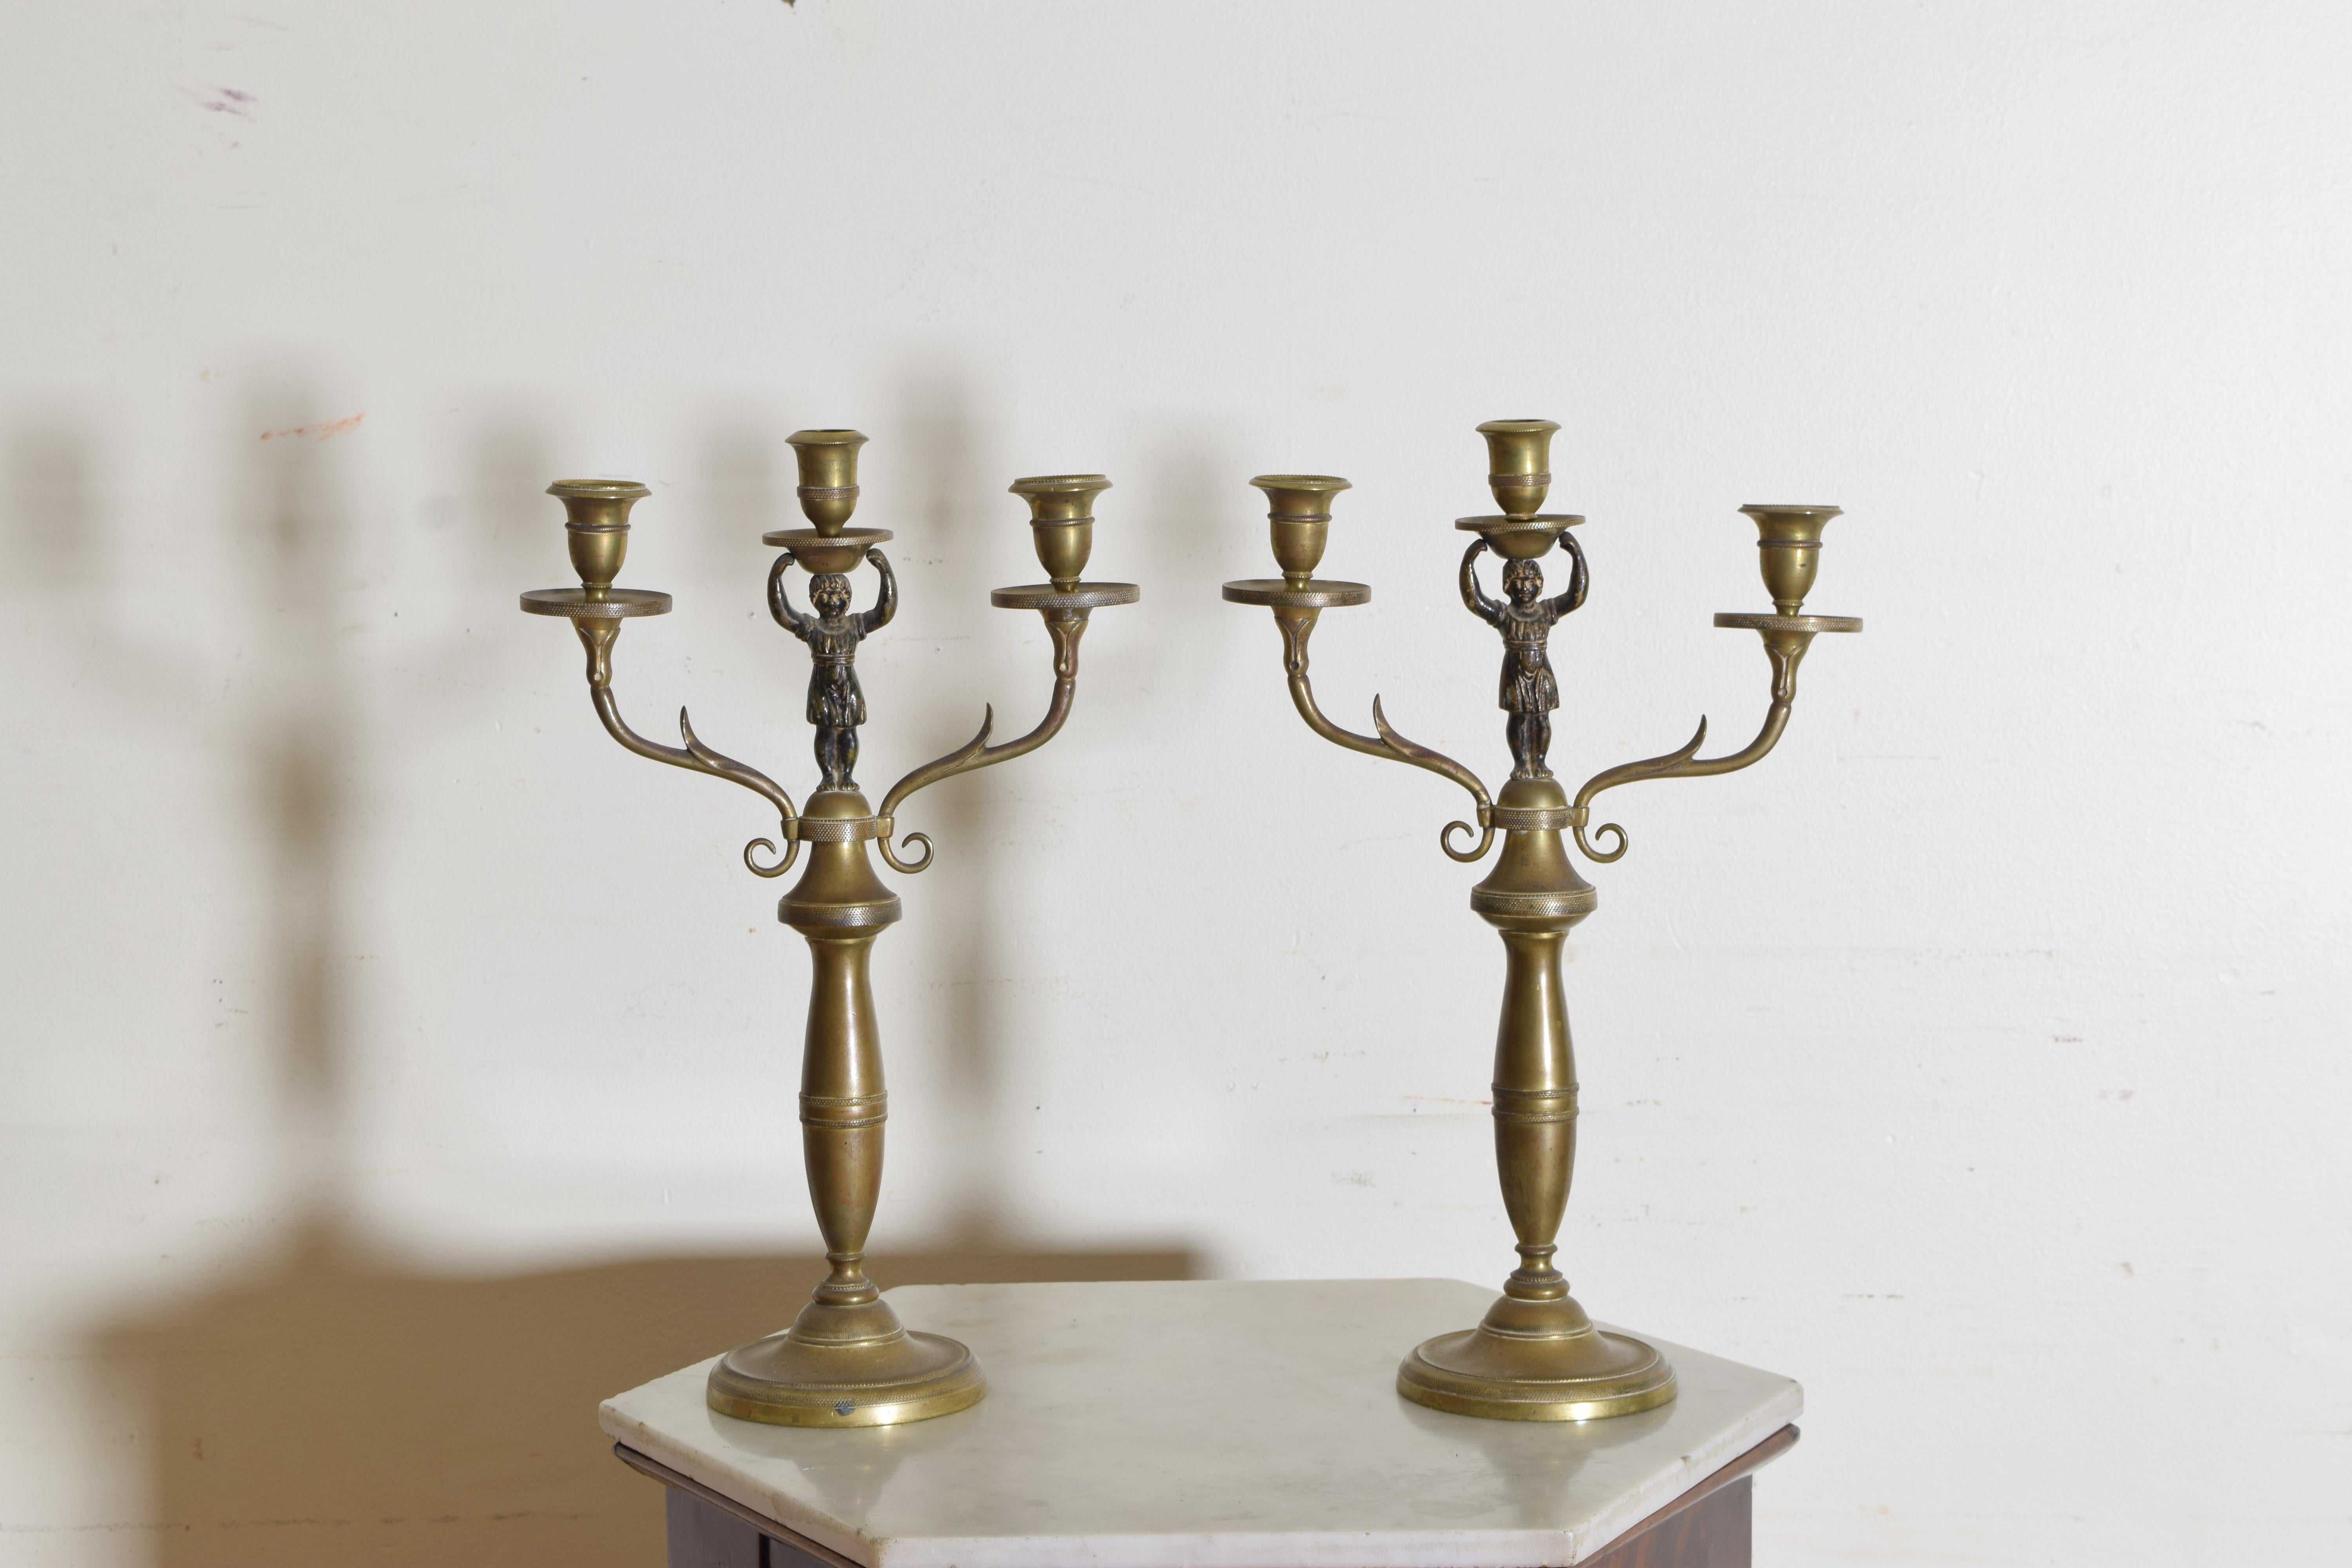 Fein gegossen und von runden Sockeln getragen, die Oberteile mit zwei Armen mit einzelnen Kerzenhaltern und einem zentralen figuralen Kerzenhalter.